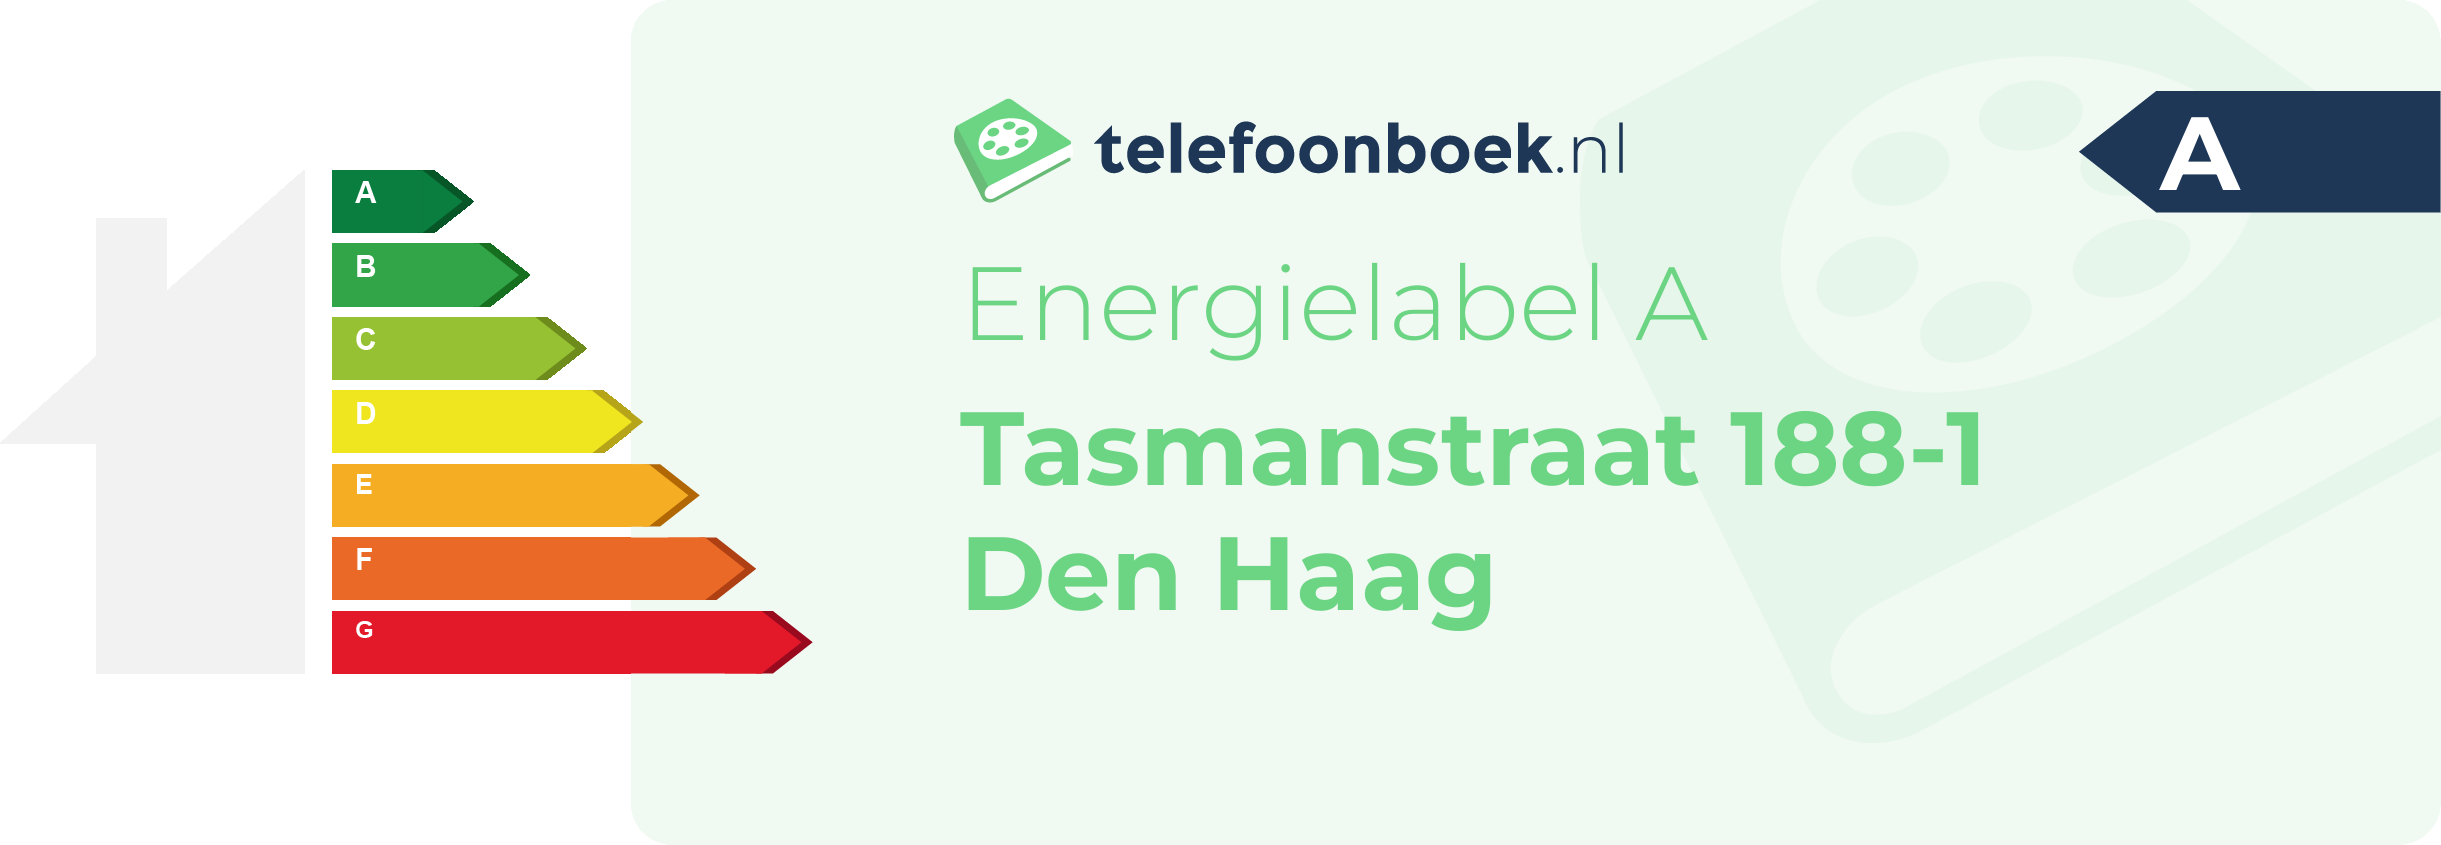 Energielabel Tasmanstraat 188-1 Den Haag